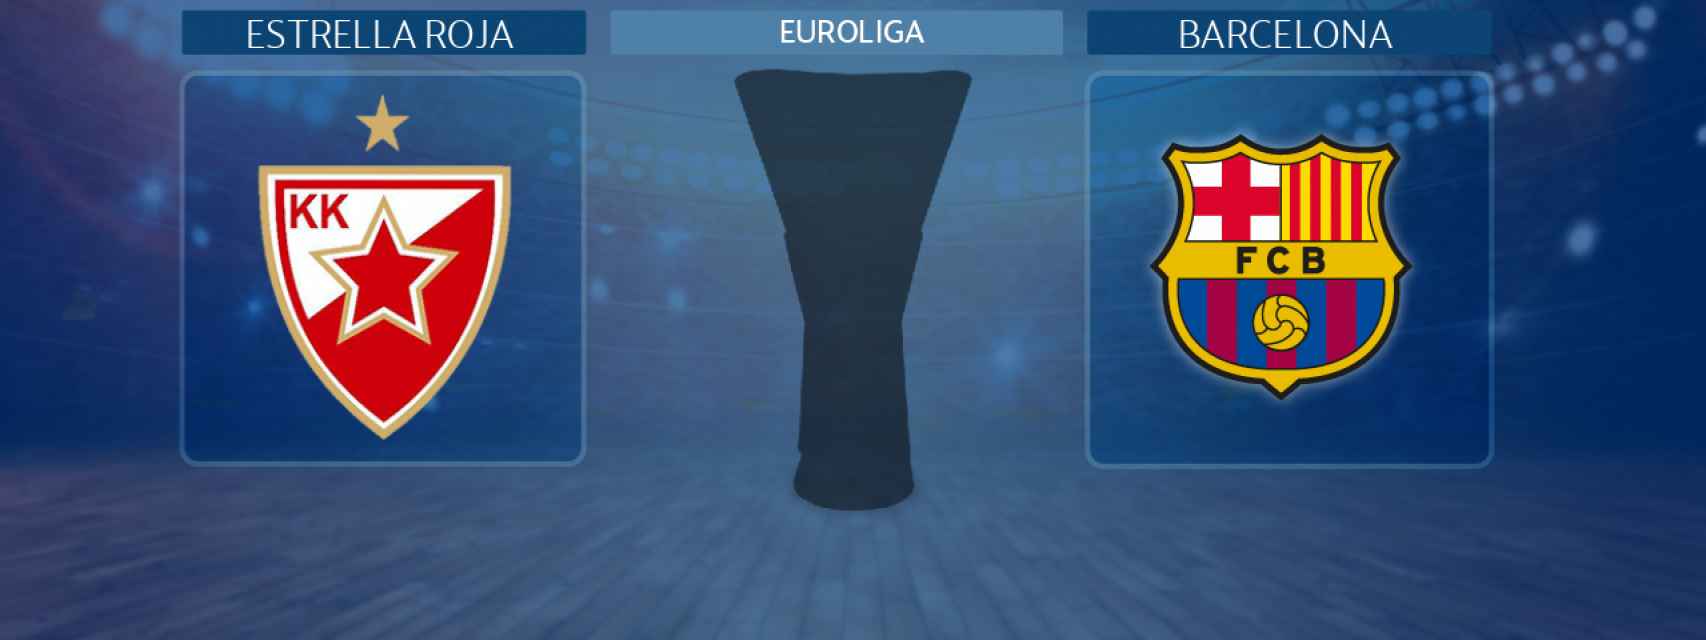 Estrella Roja - Barcelona, partido de la Euroliga